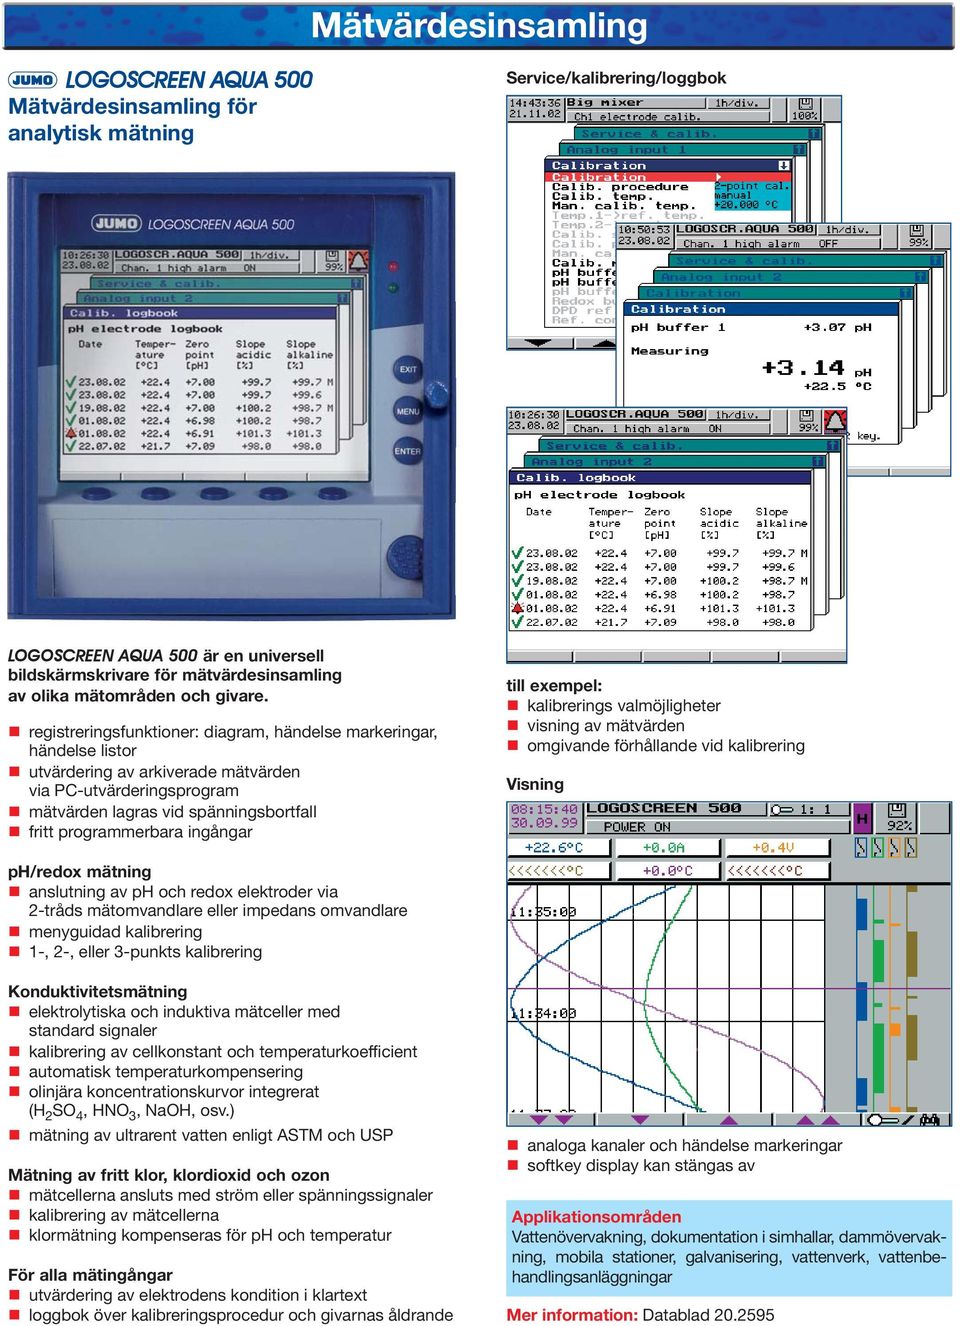 registreringsfunktioner: diagram, händelse markeringar, händelse listor utvärdering av arkiverade mätvärden via PC-utvärderingsprogram mätvärden lagras vid spänningsbortfall fritt programmerbara